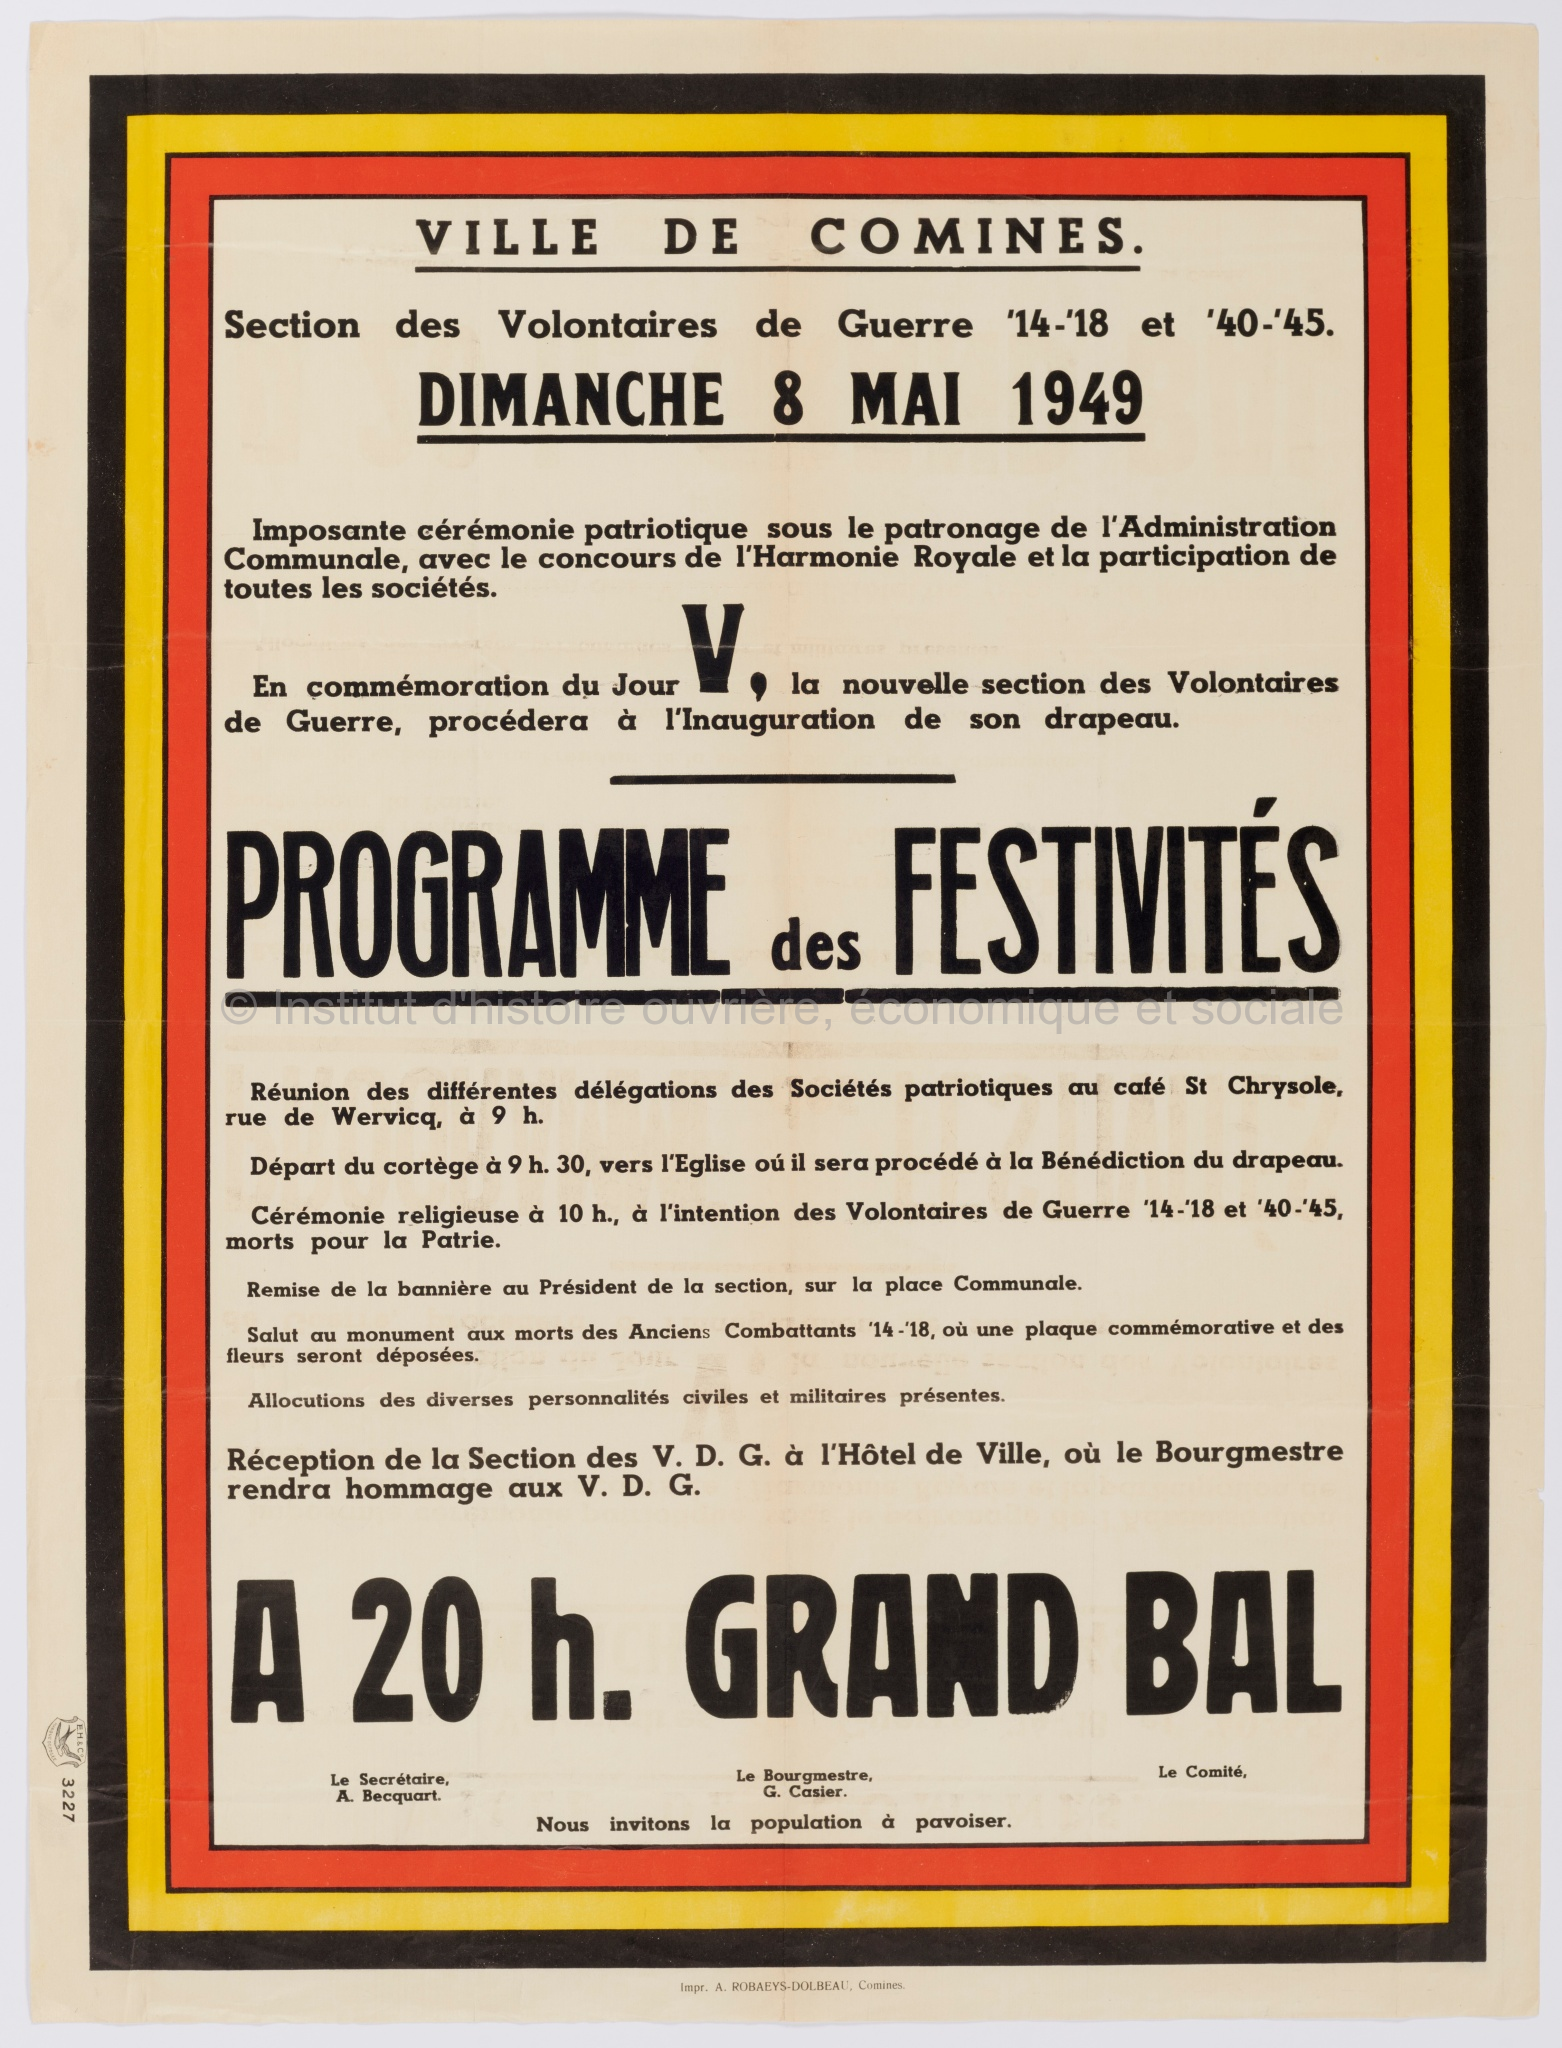 Ville de Comines, section des volontaires de guerre 14-18 et 40-45 : dimanche 8 mai 1949, programme des festivités